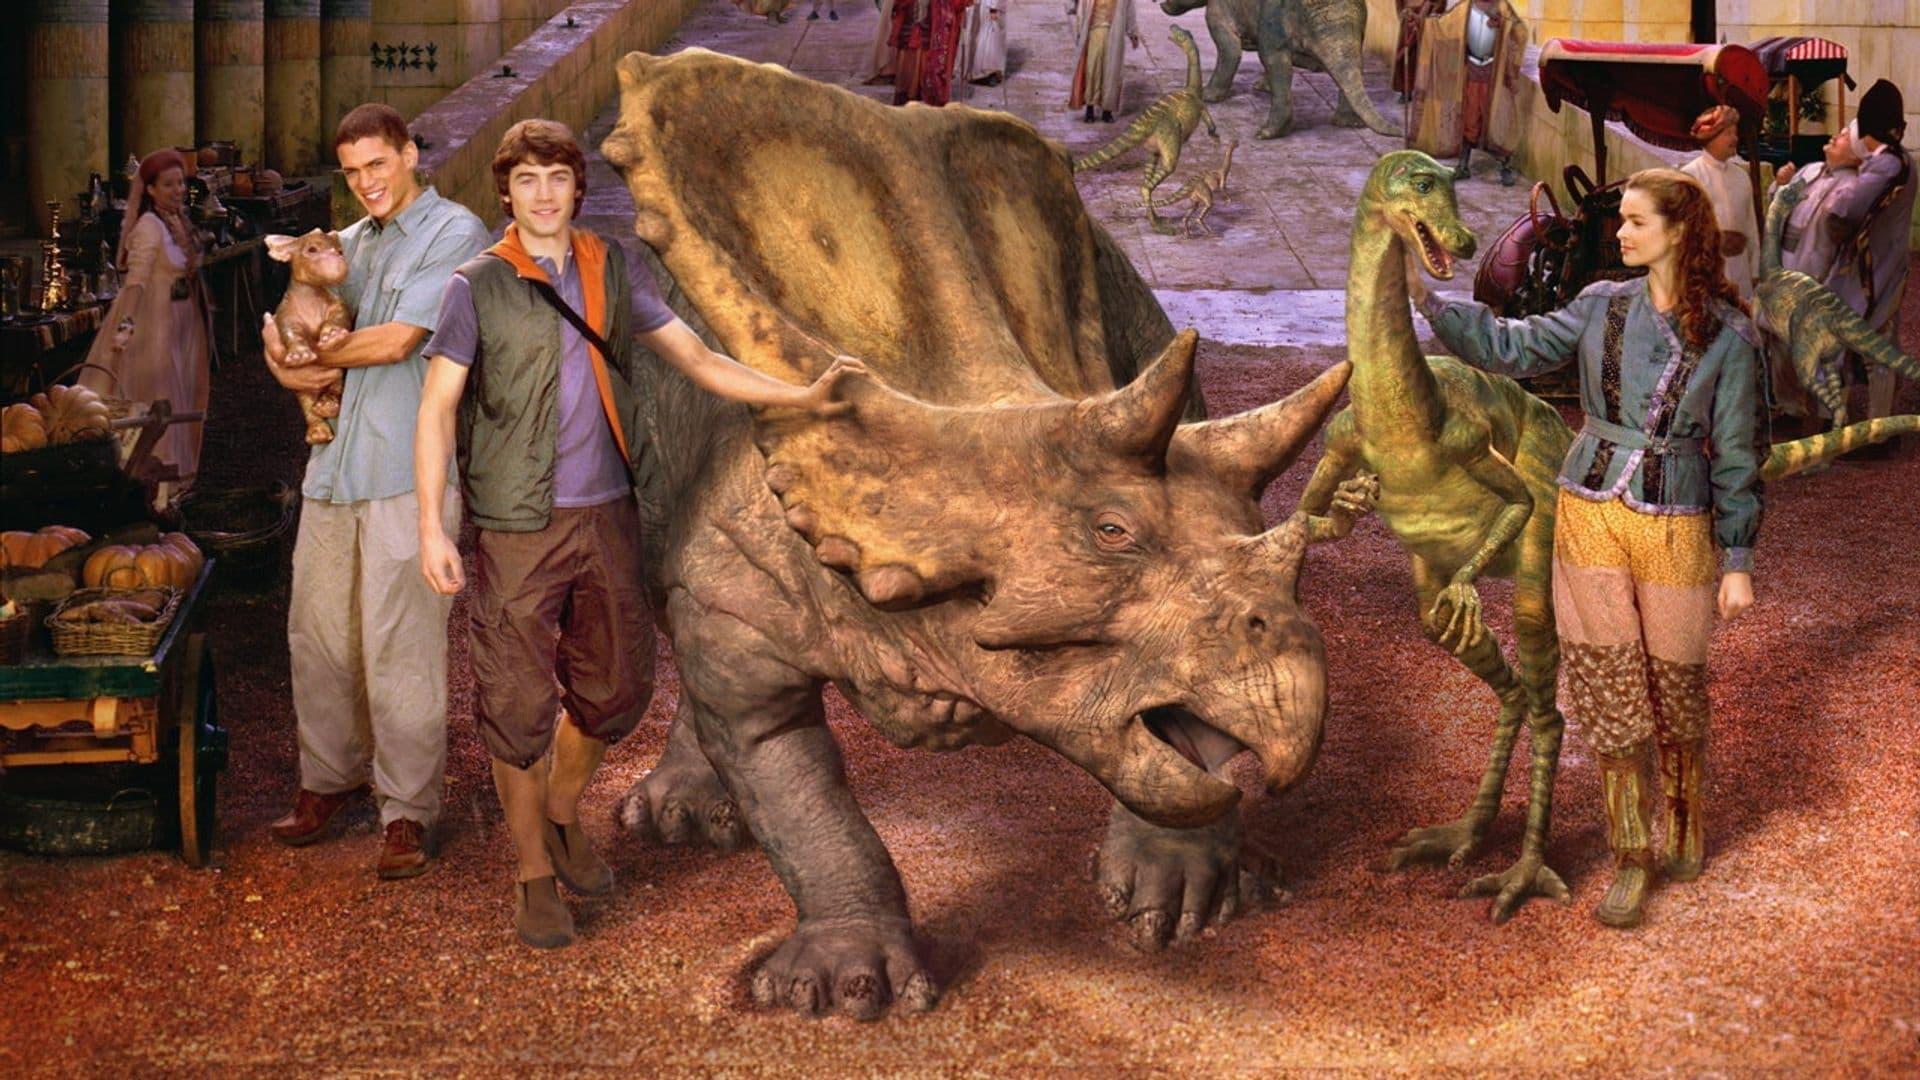 Dinotopia backdrop